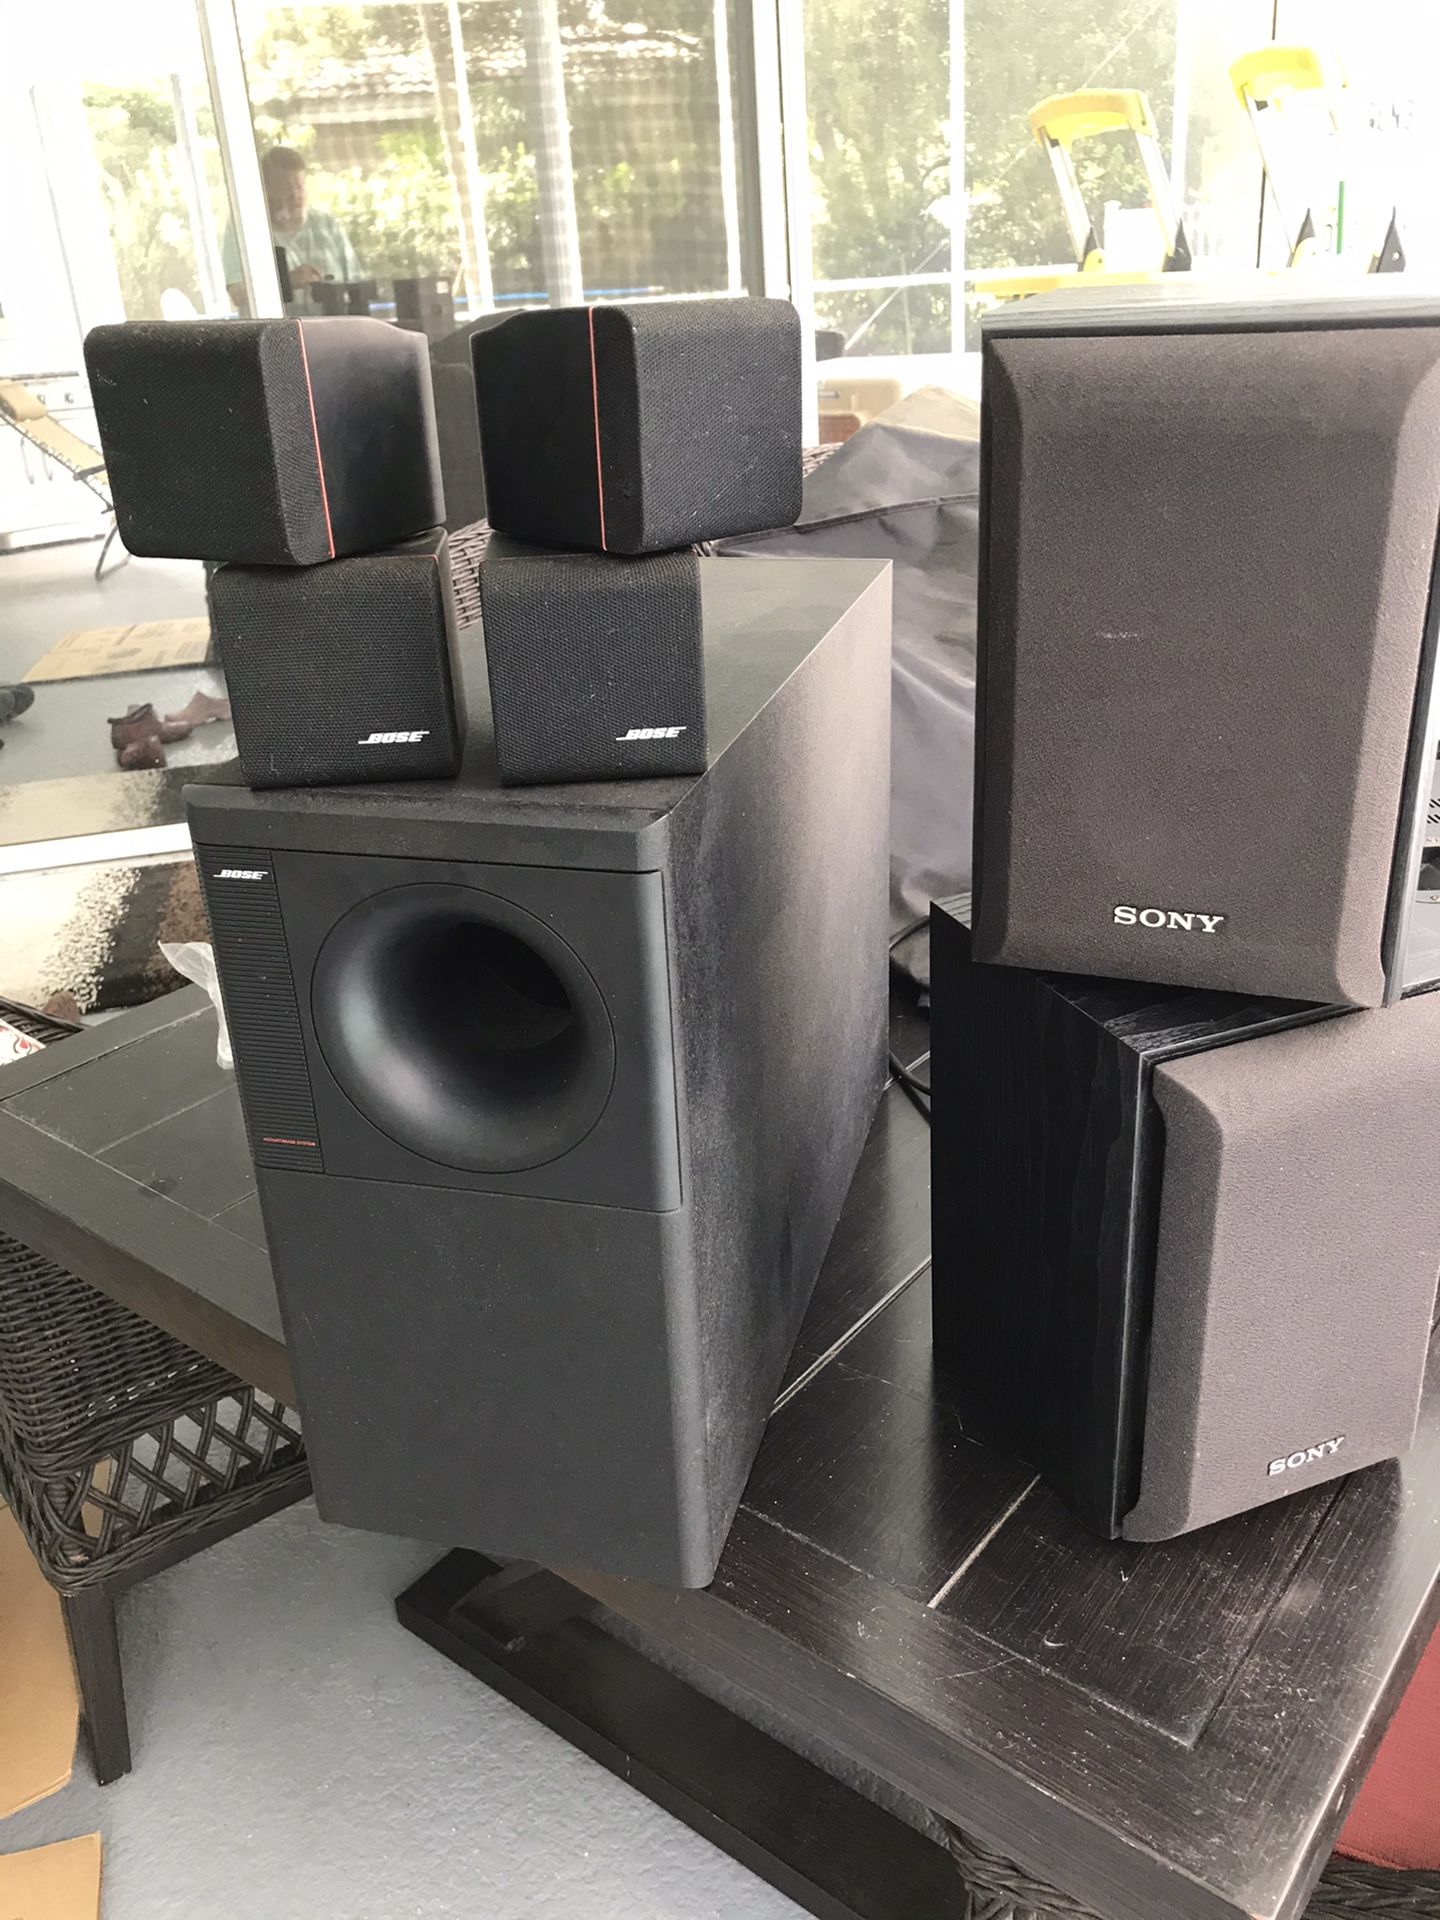 BOSE speaker system set, 2 Sony speakers, power amp